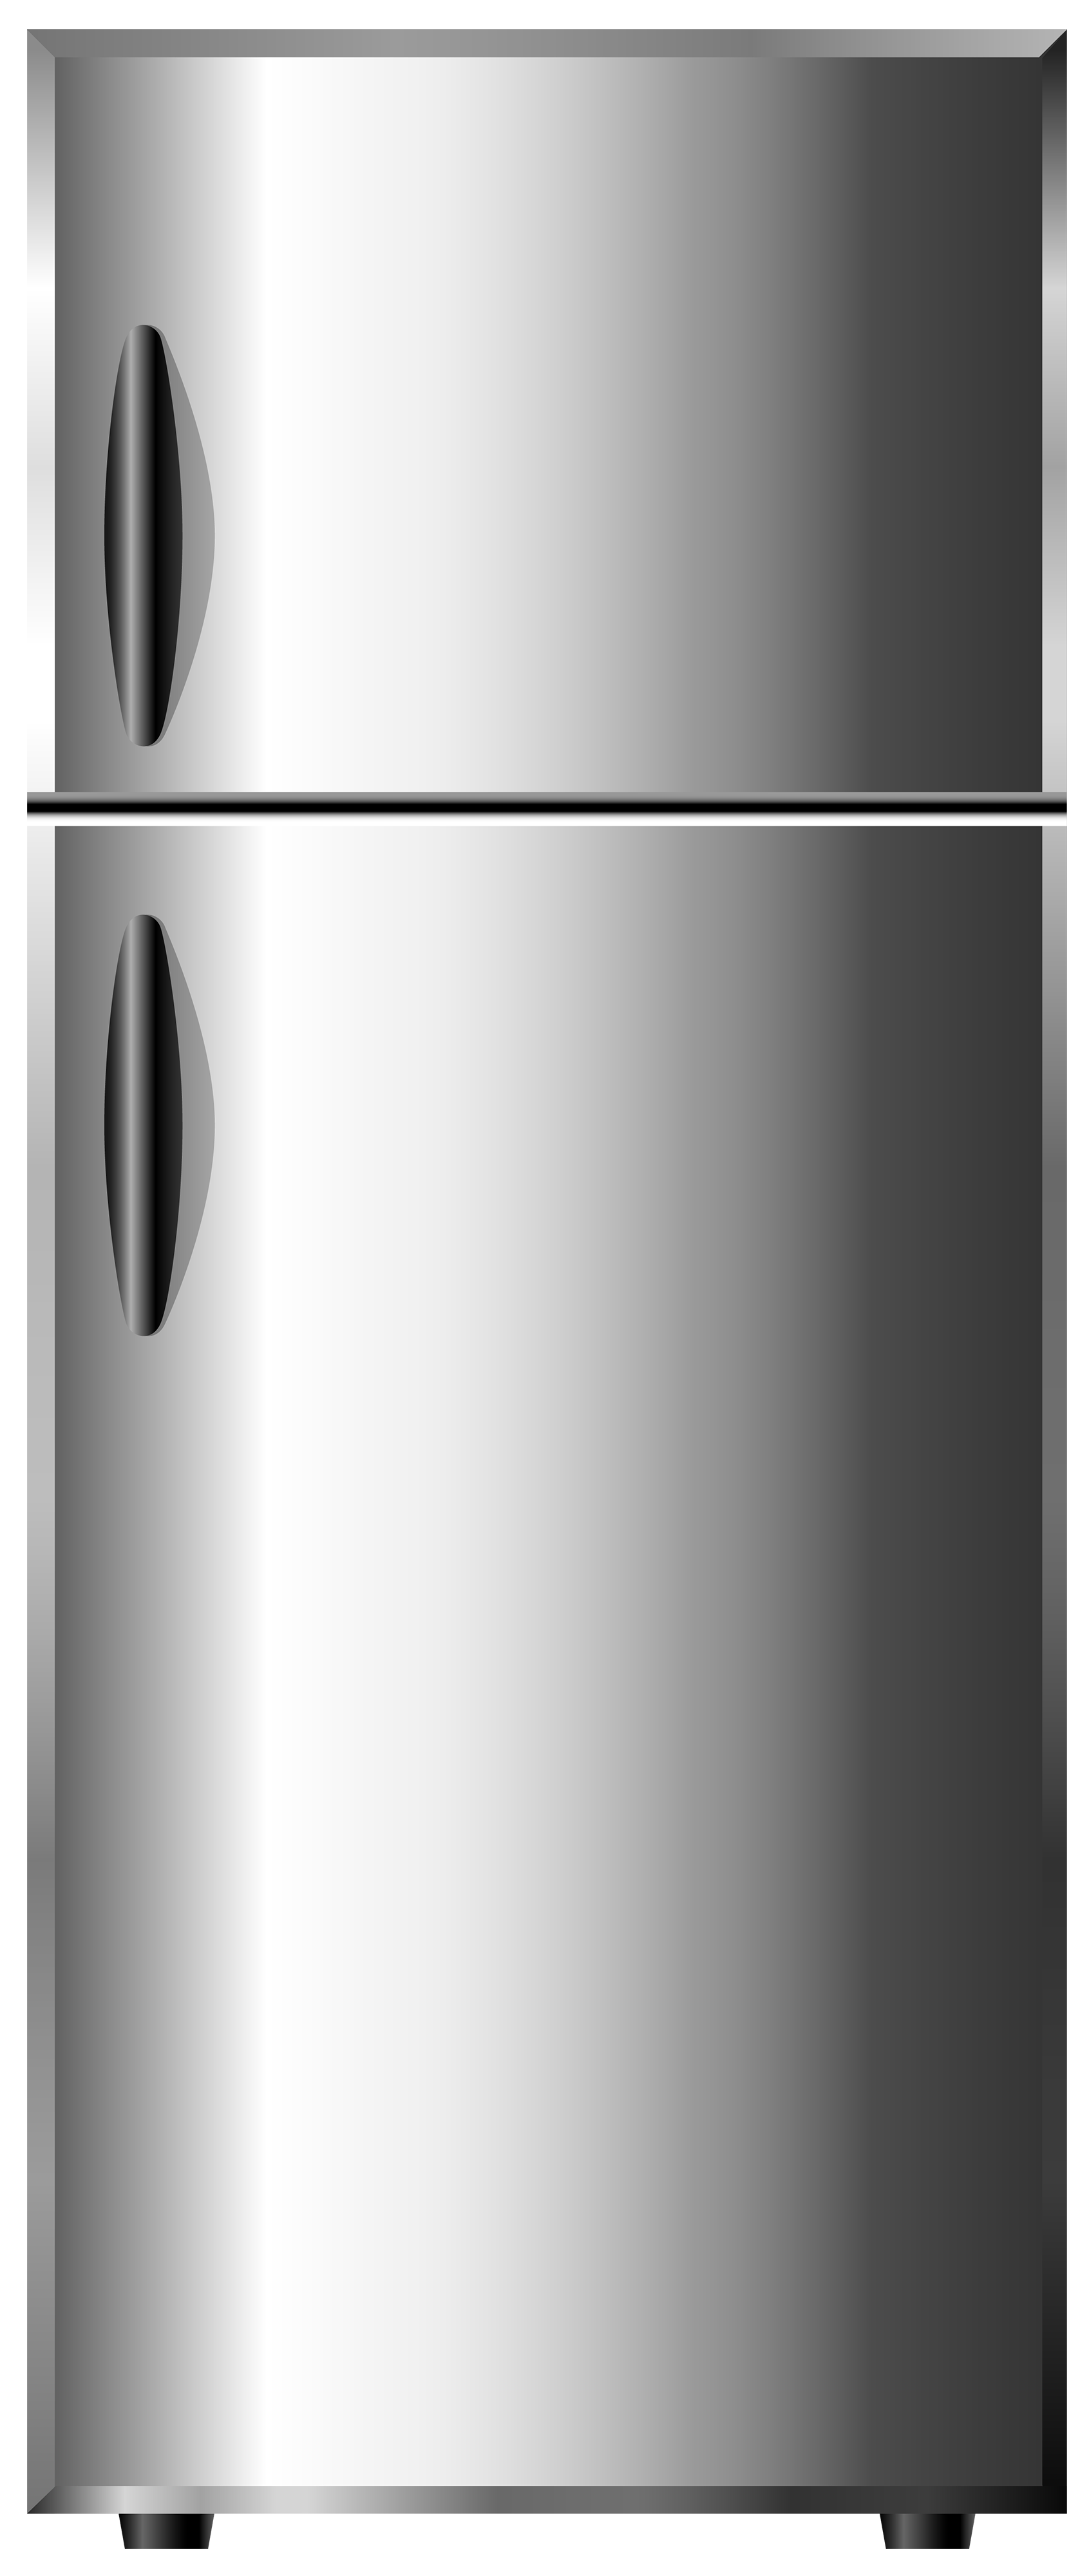 fridge Clipart png